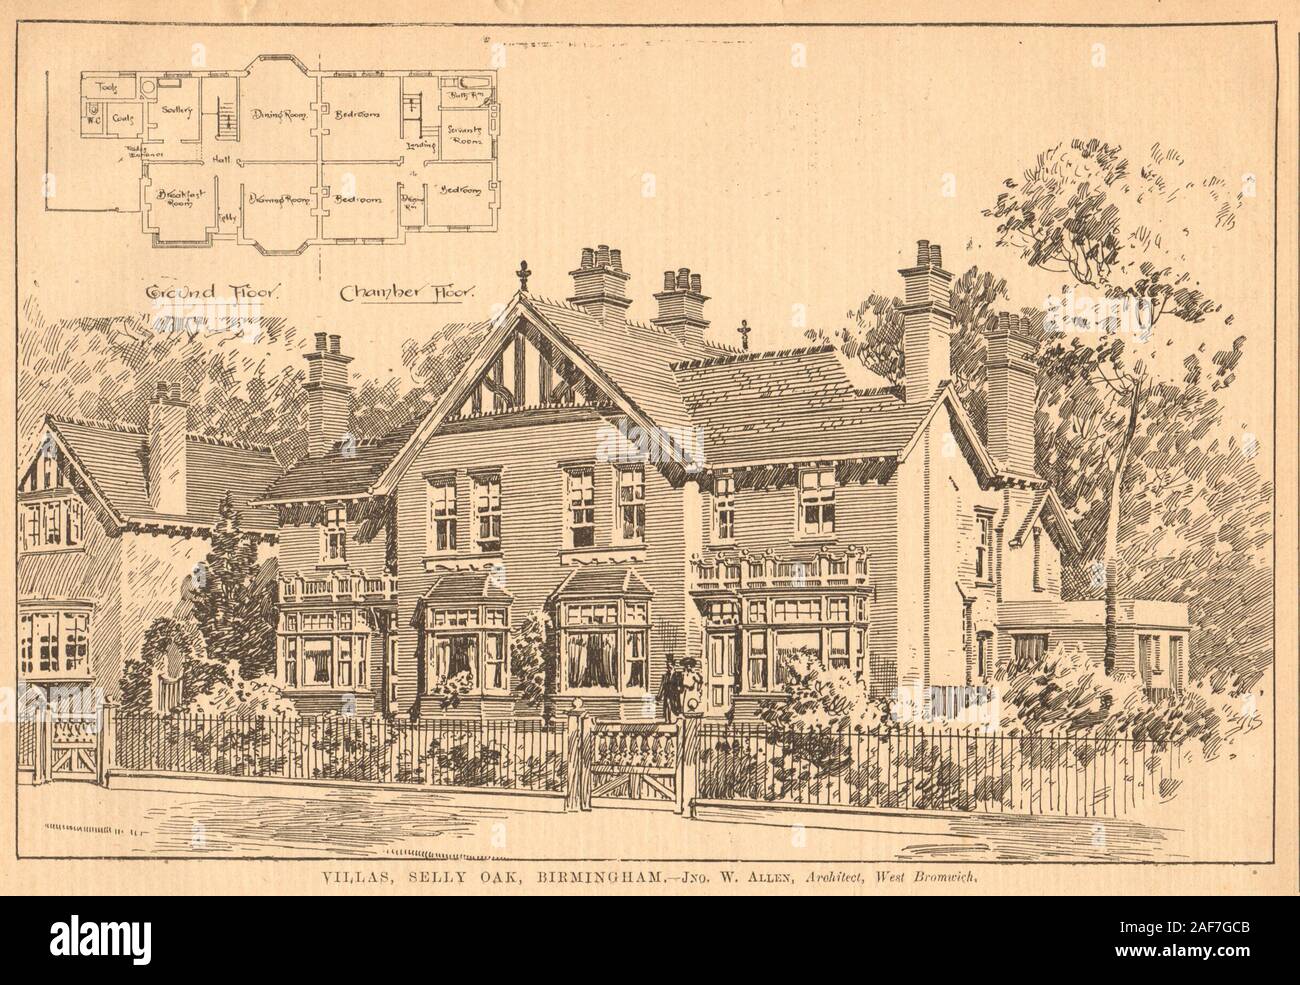 Villas, de Selly Oak, Birmingham - Jno. Allen W., Architecte, West Bromwich 1903 Banque D'Images